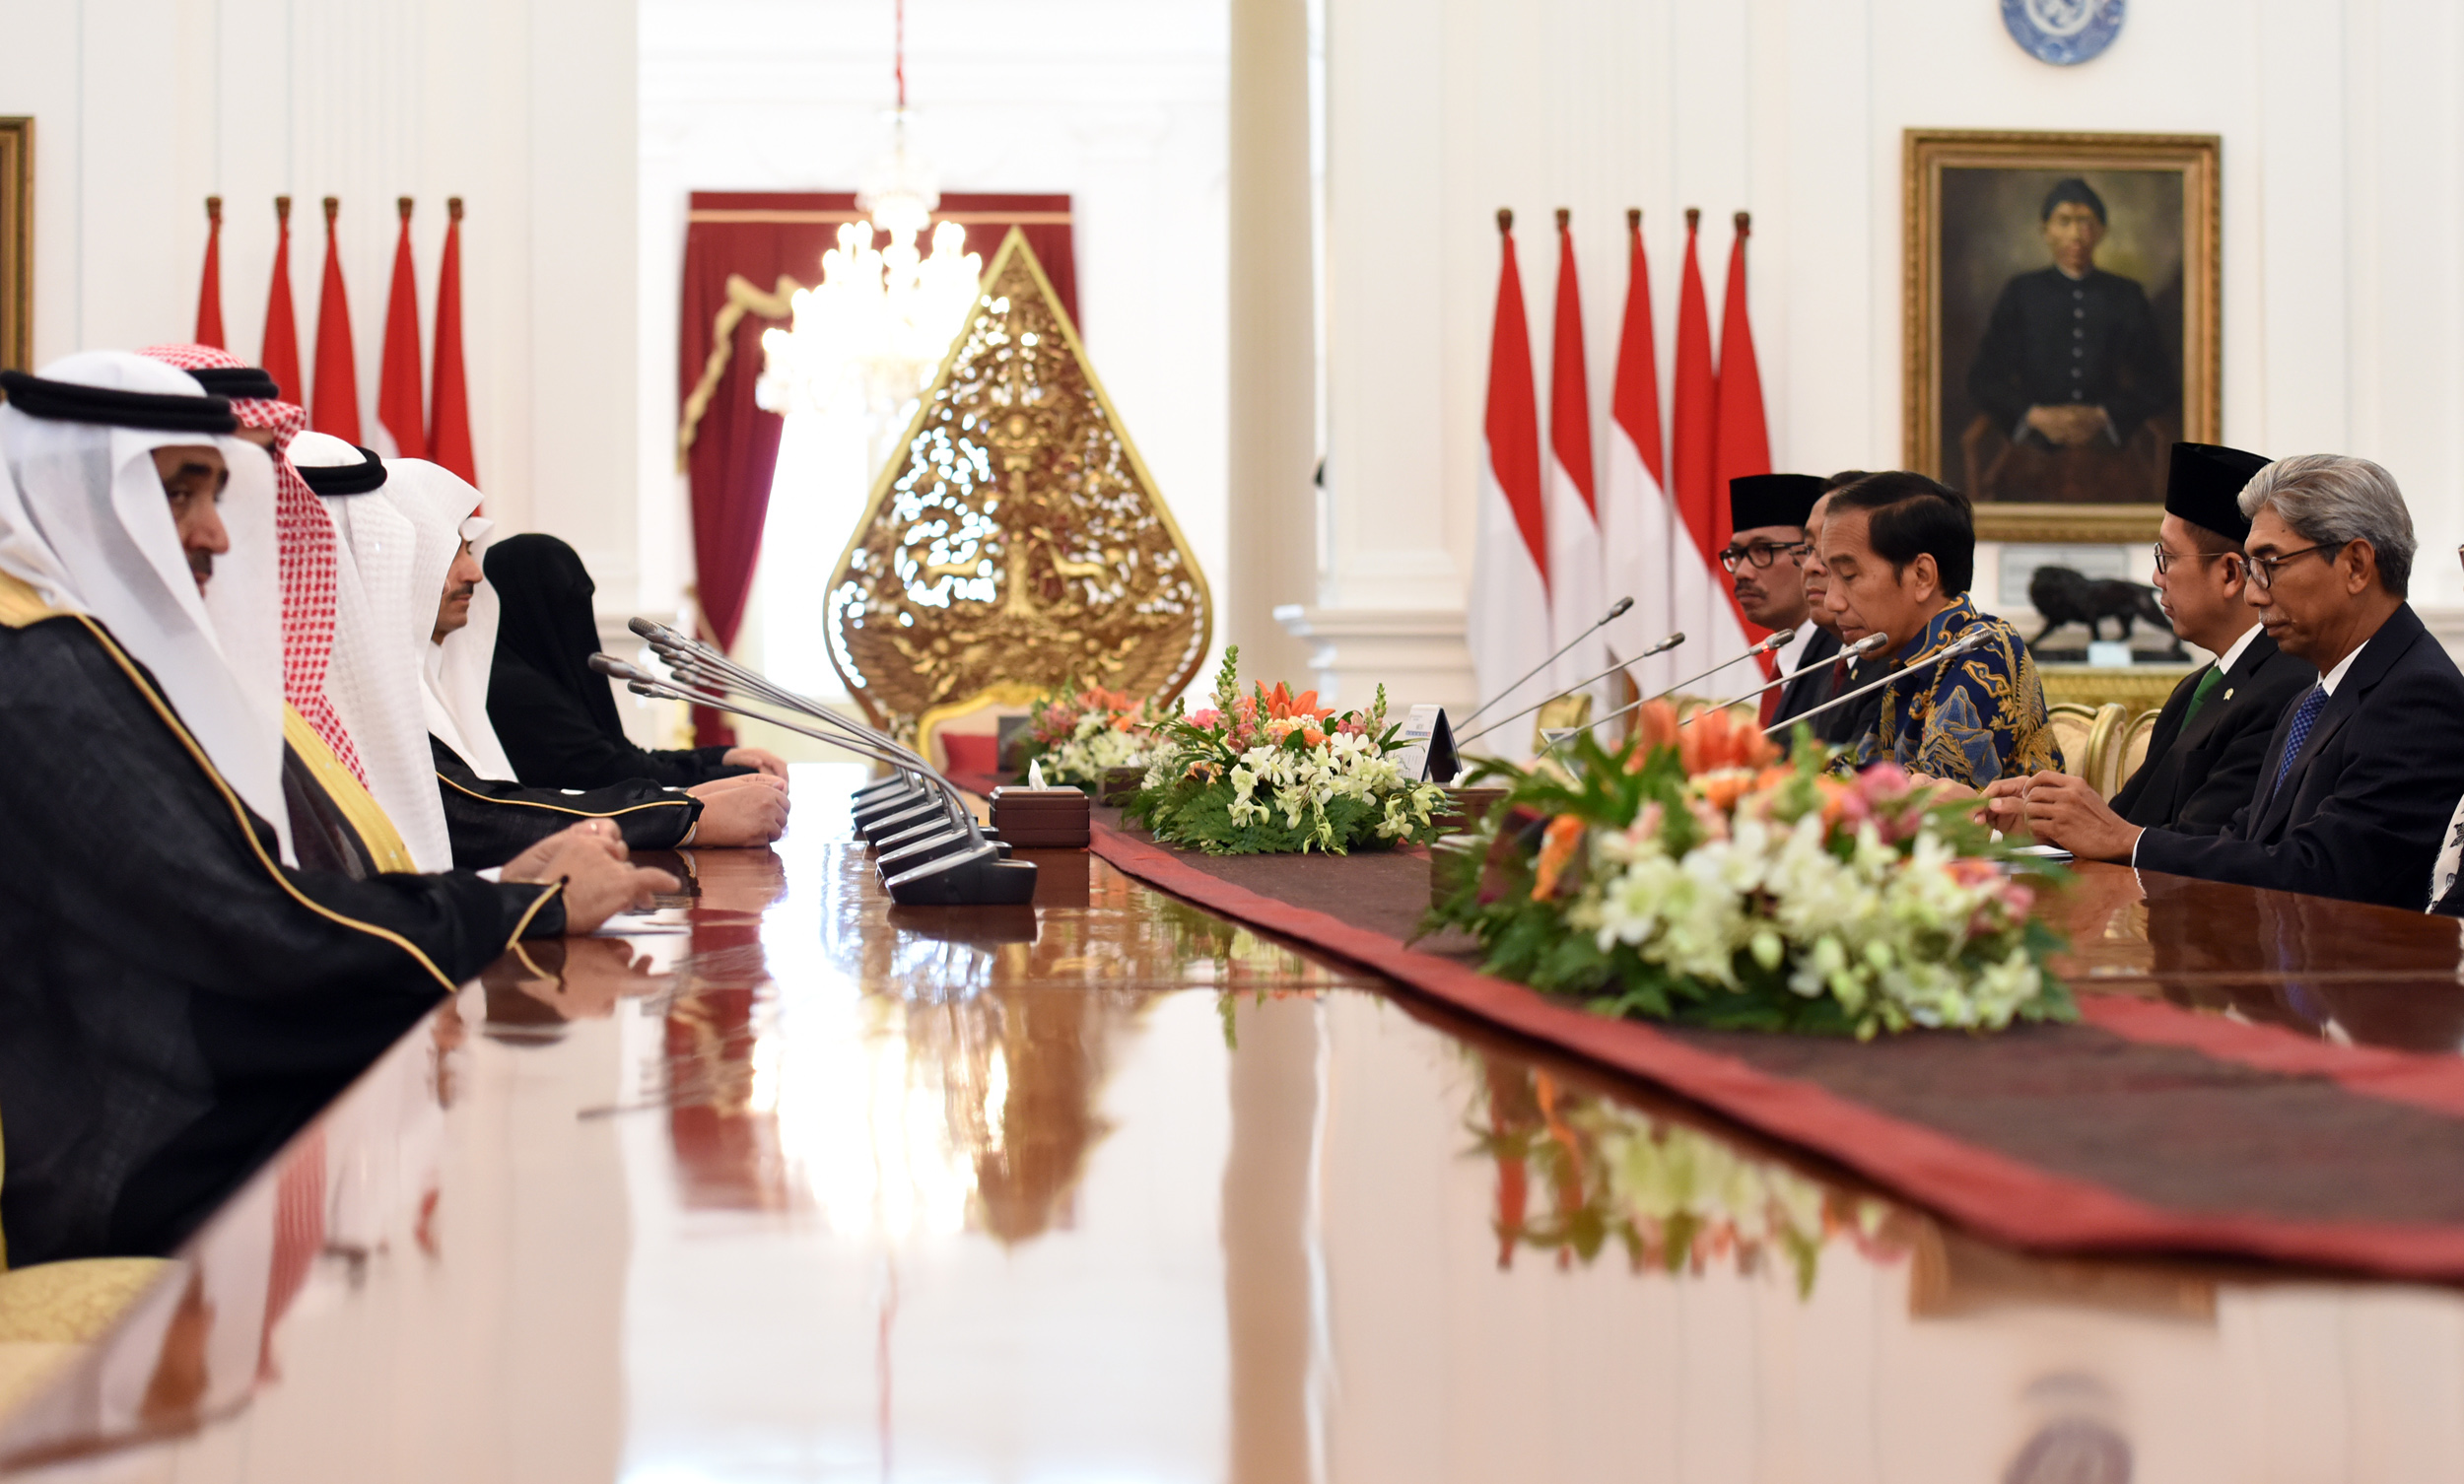 Presiden Jokowi didampingi Mensesneg, Menag, dan Wamenlu menerima kunjungan Majlis Syura Keajaan Saudi Arabia, di Istana Merdeka, Jakarta, Kamis (16/2) pagi. (Foto: Rahmat/Humas)